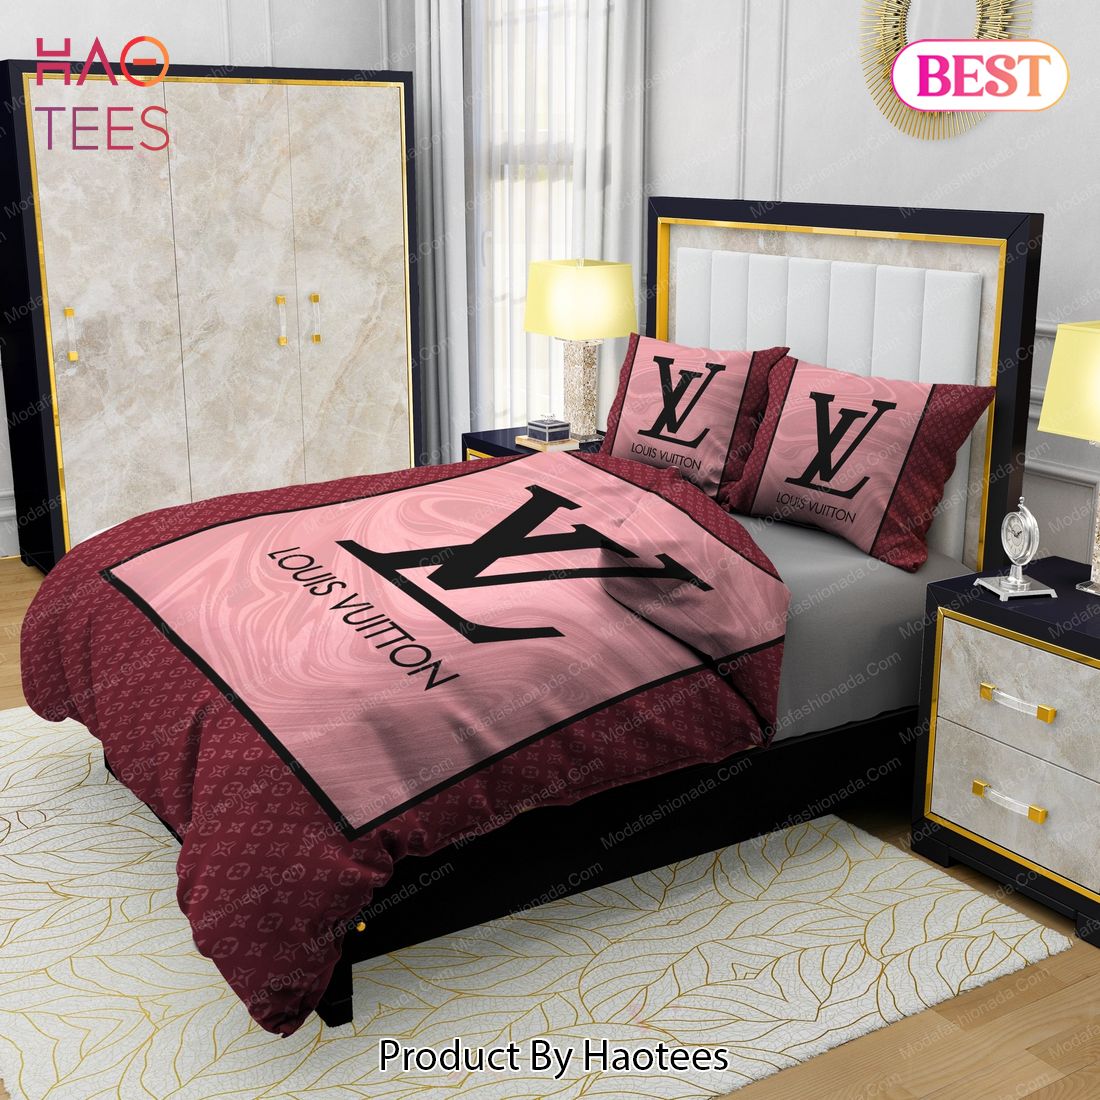 Black Veinstone And Gold Louis Vuitton Bedding Sets Bed Sets, Bedroom Sets, Comforter  Sets, Duvet Cover